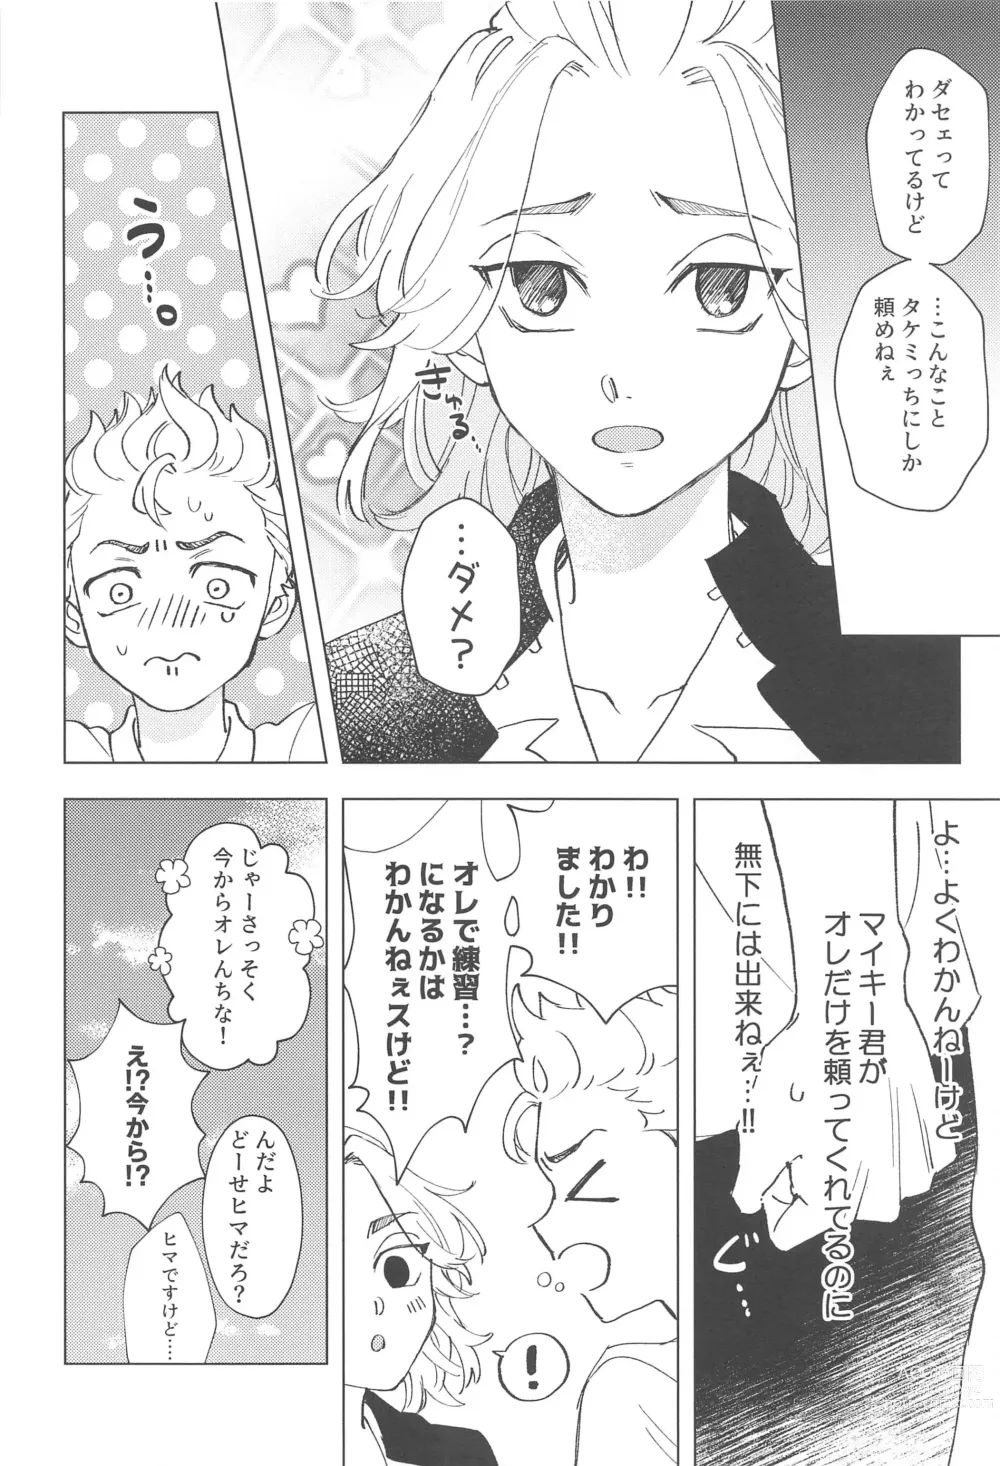 Page 9 of doujinshi Shishunki Heartbeat